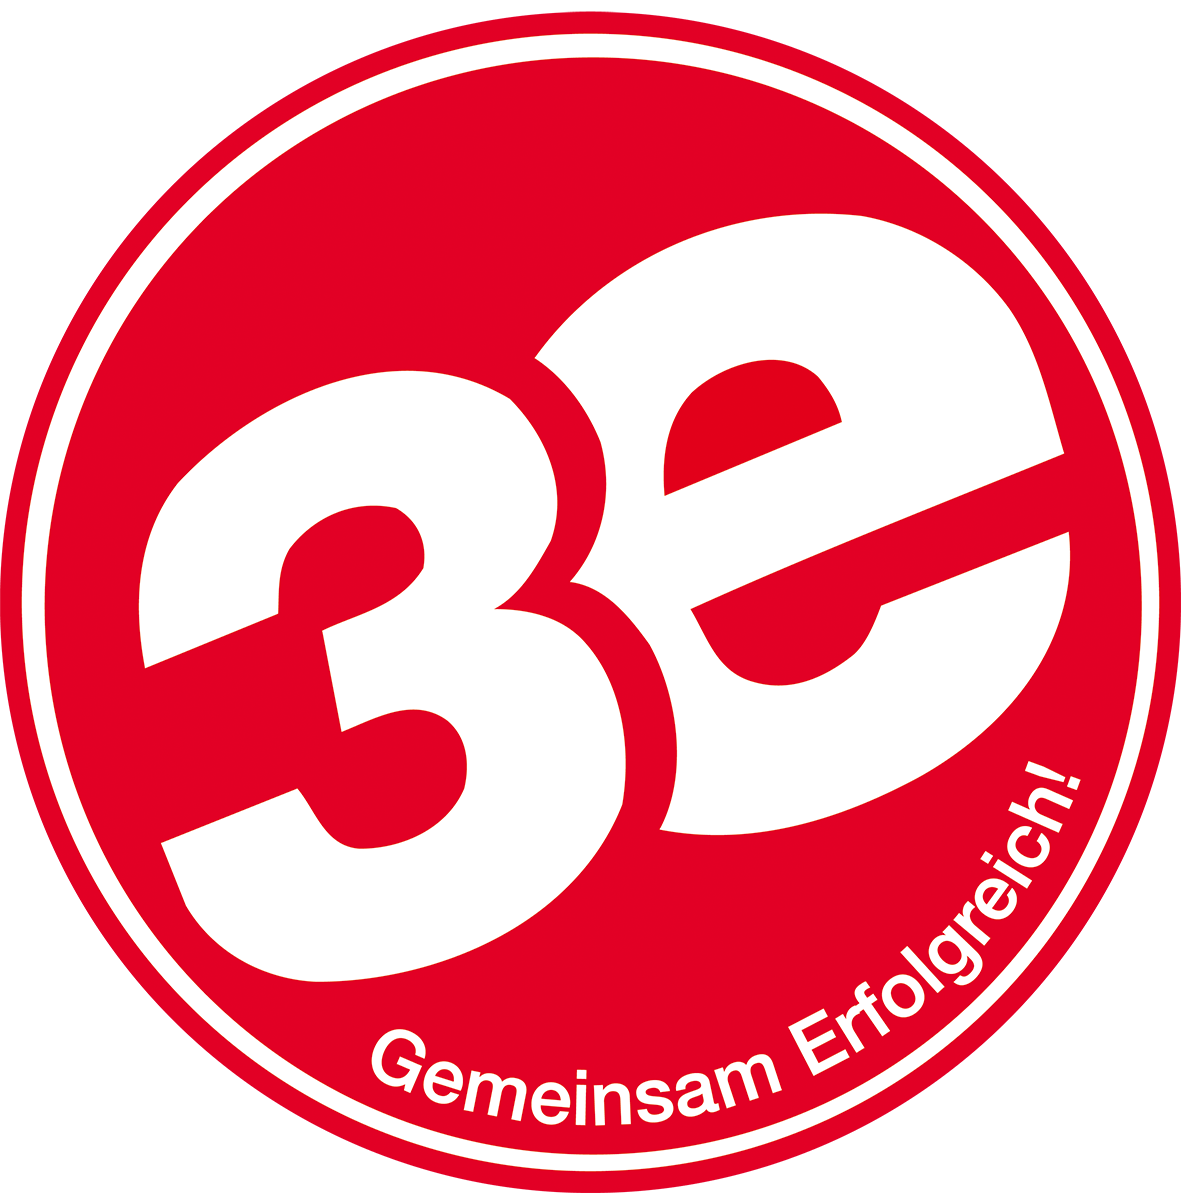 3e - Logo